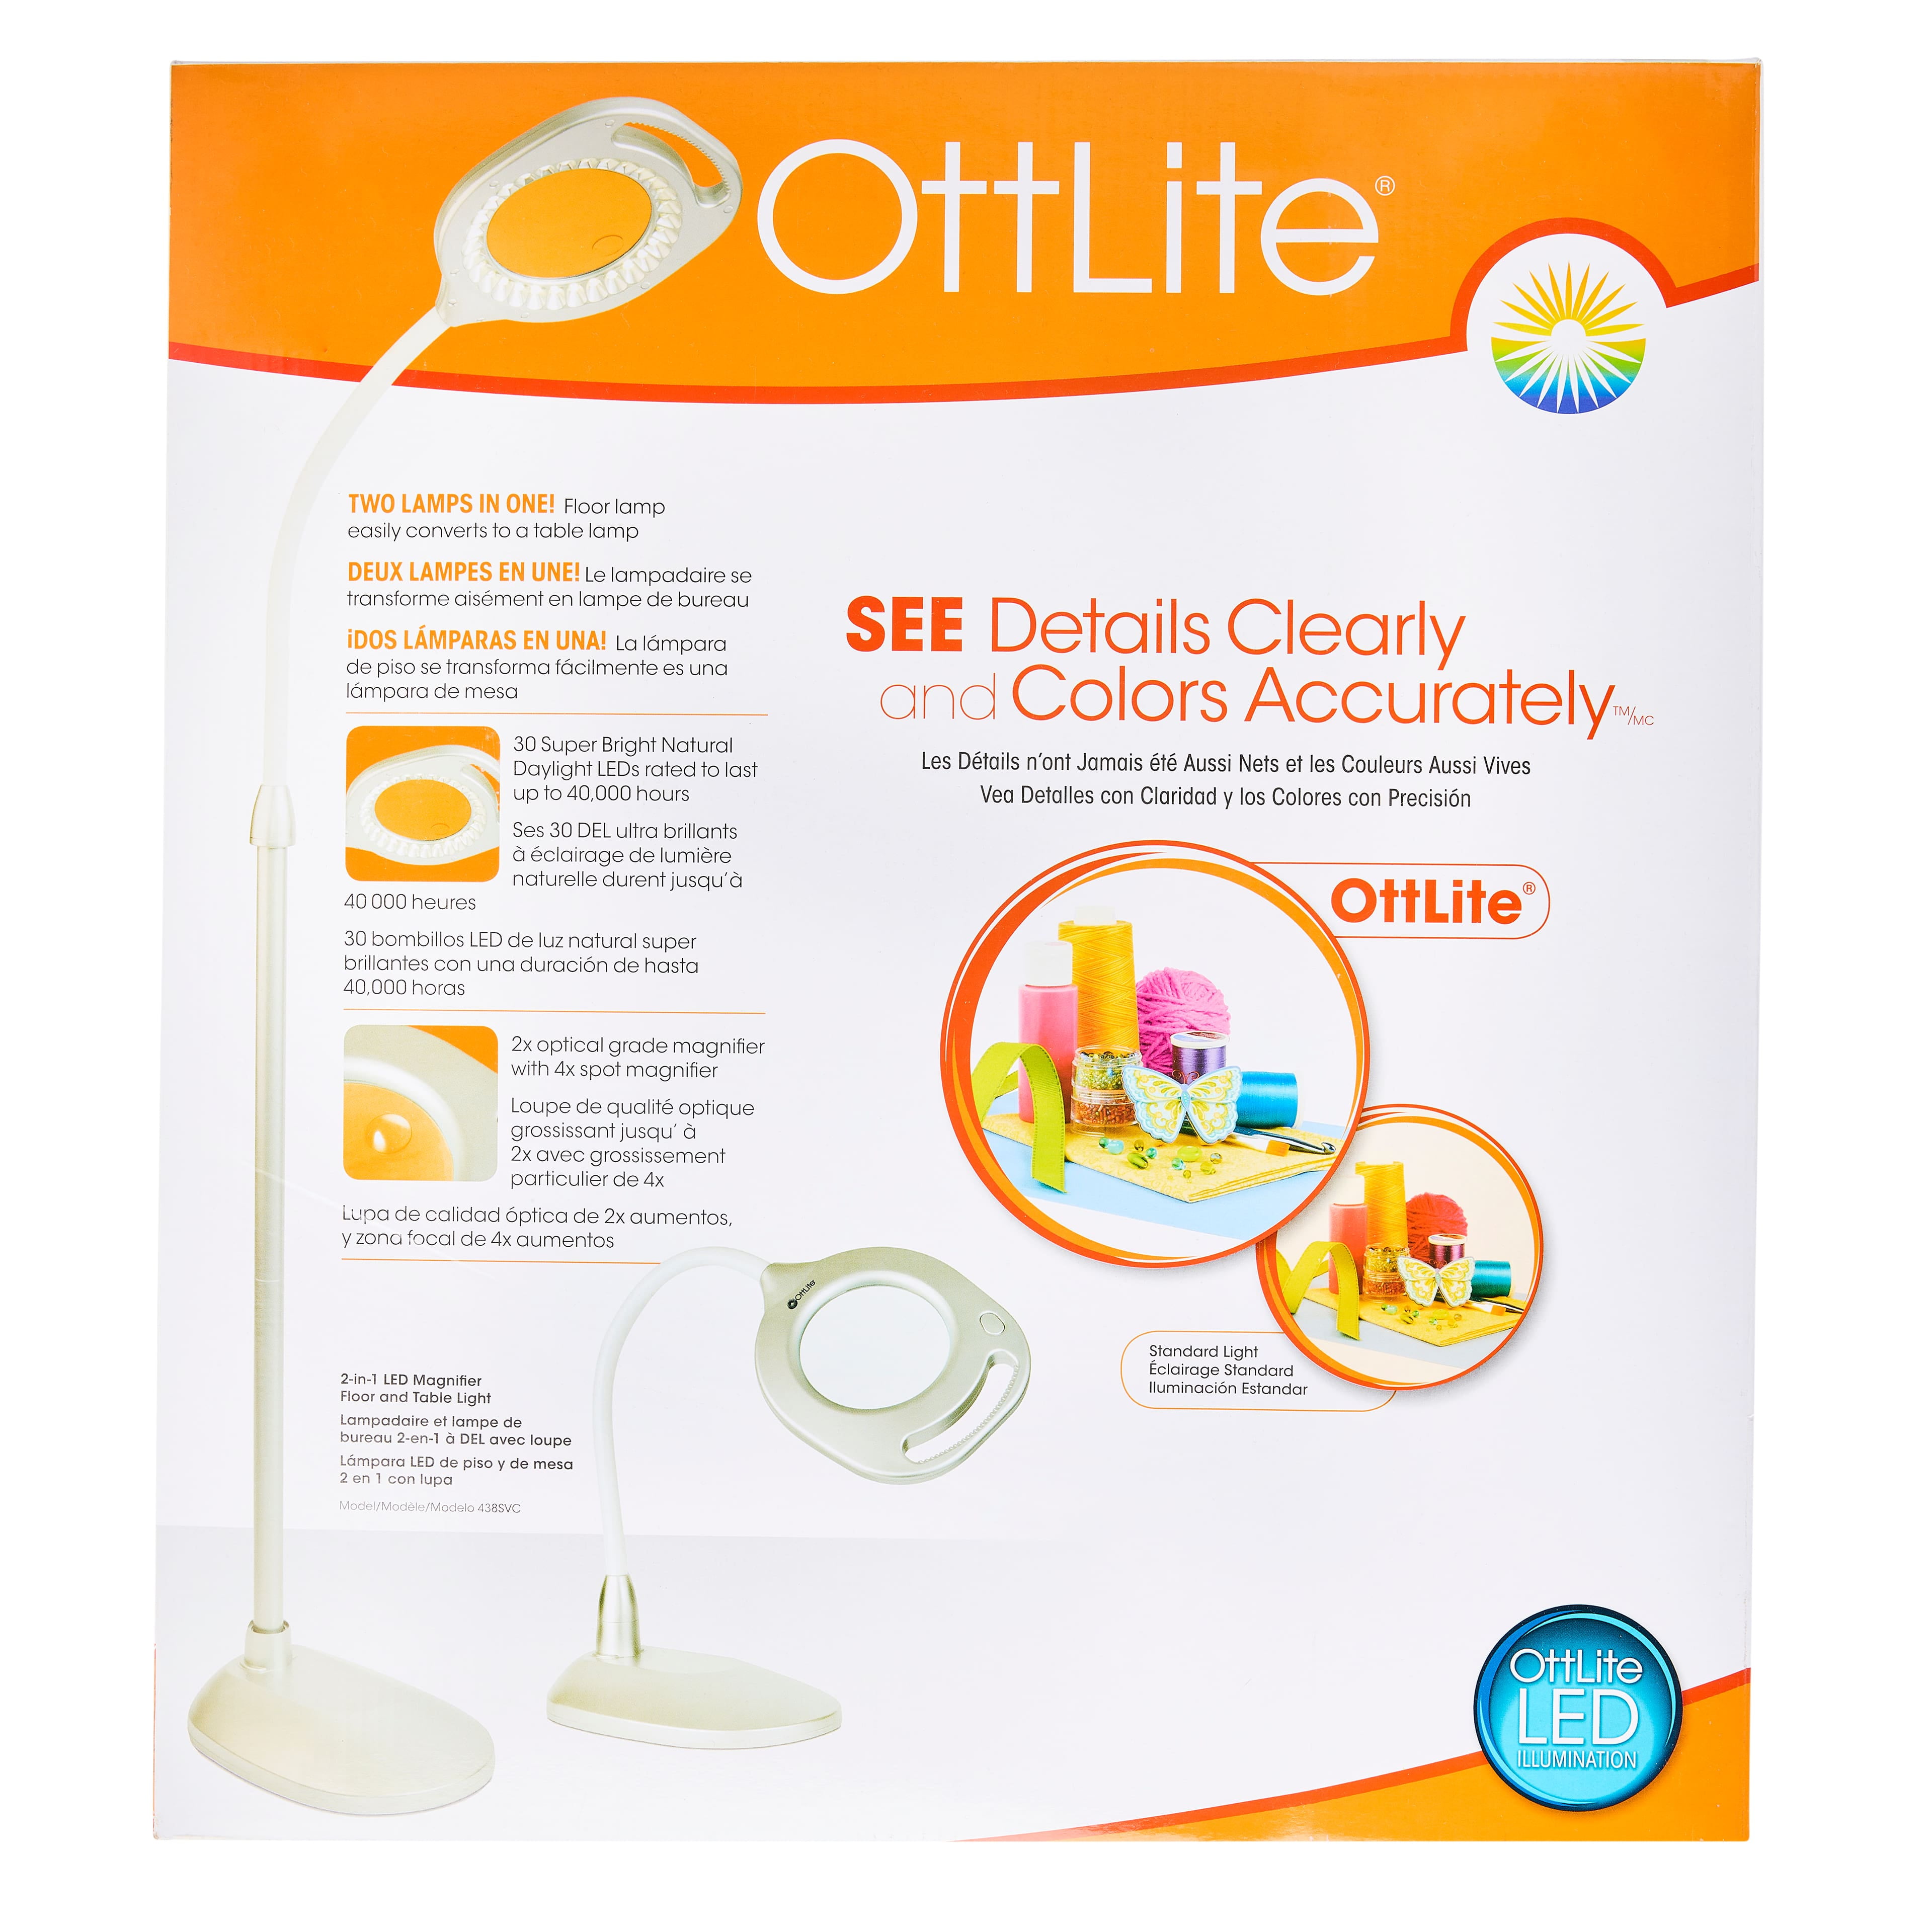 OttLite® 2-in-1 LED Floor & Table Light - 1